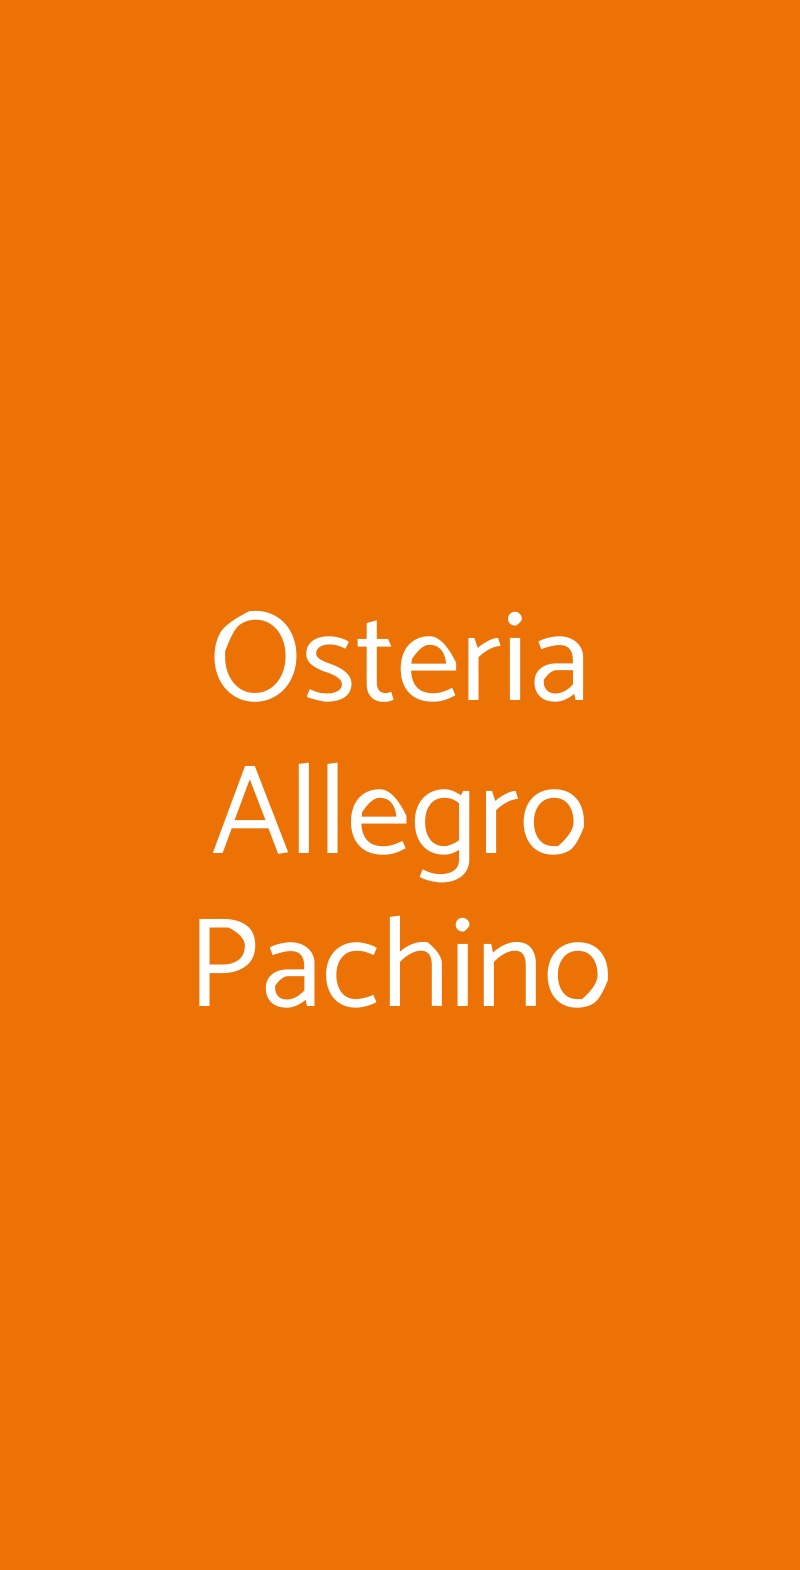 Osteria Allegro Pachino Roma menù 1 pagina